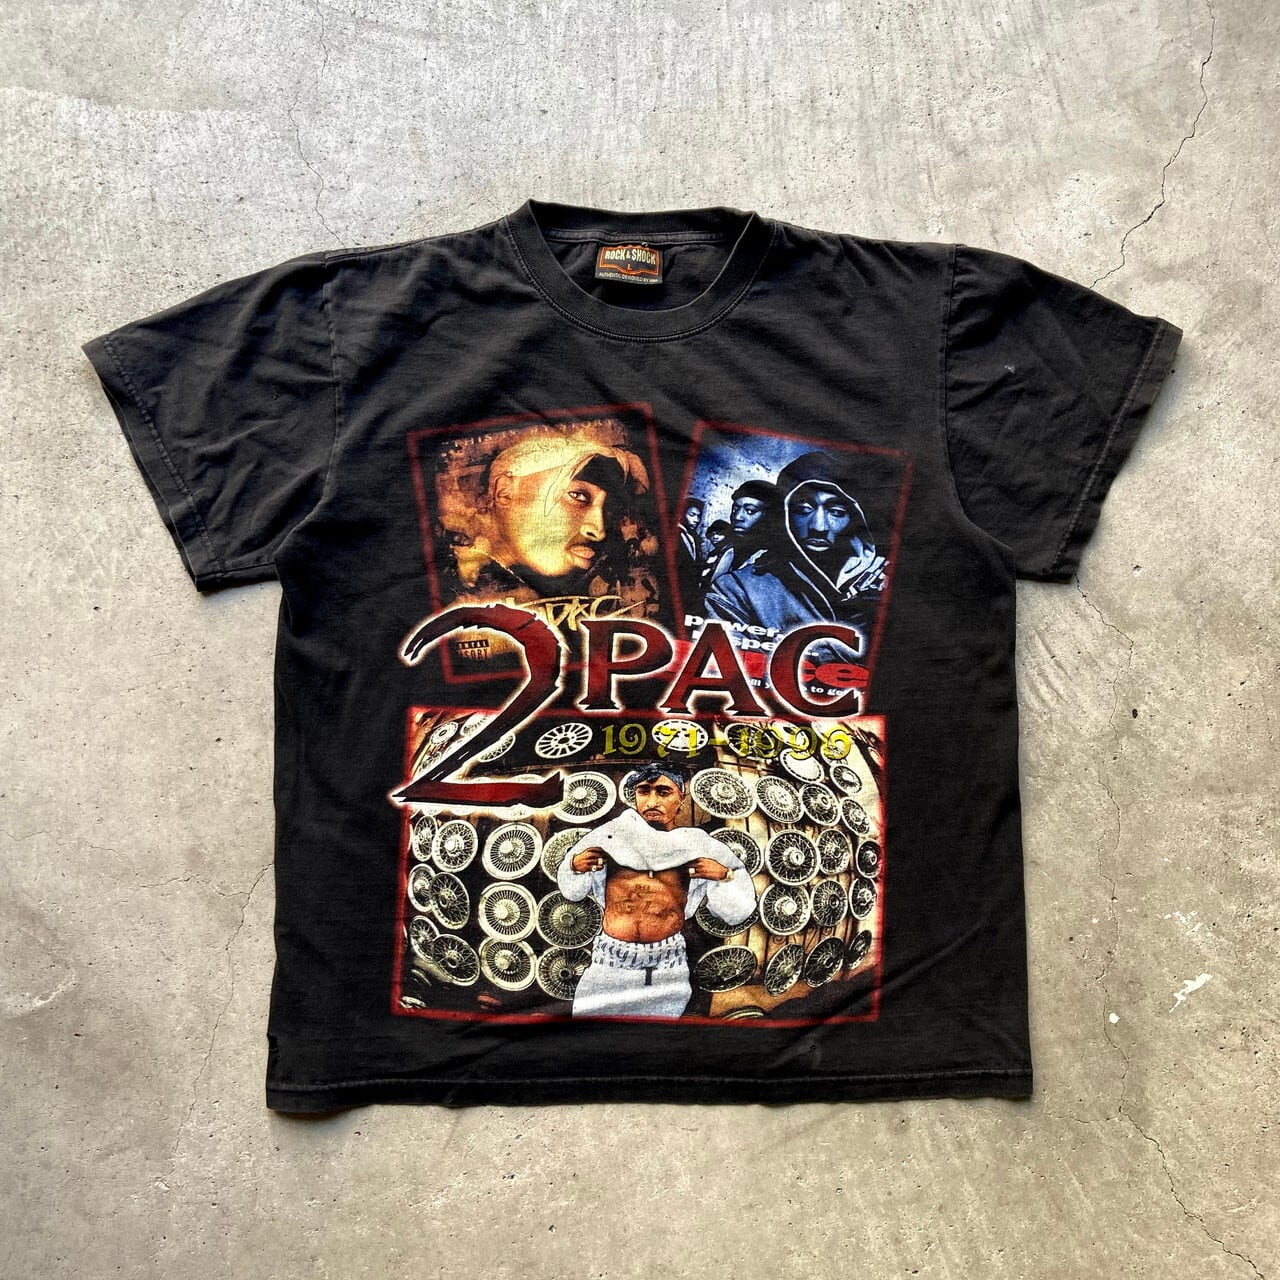 755センチ身幅VINTAGE ヴィンテージ 90s The Planet Inc 2pac Tupac ザ プラネットインク ツーパック 半袖Tシャツ ラップT ブラック